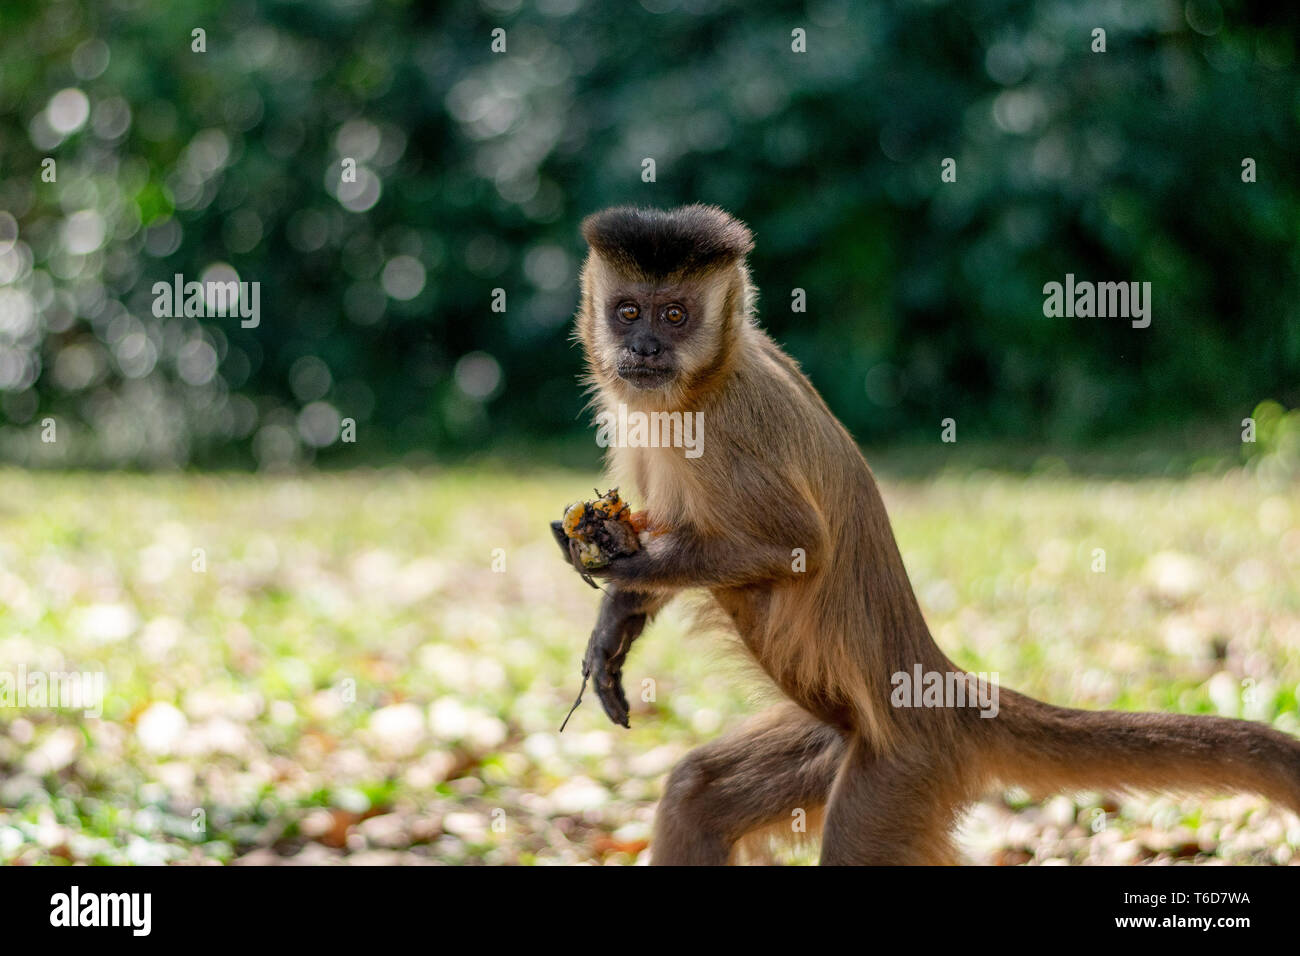 Beautiful Sapajus monkey closeup Stock Photo